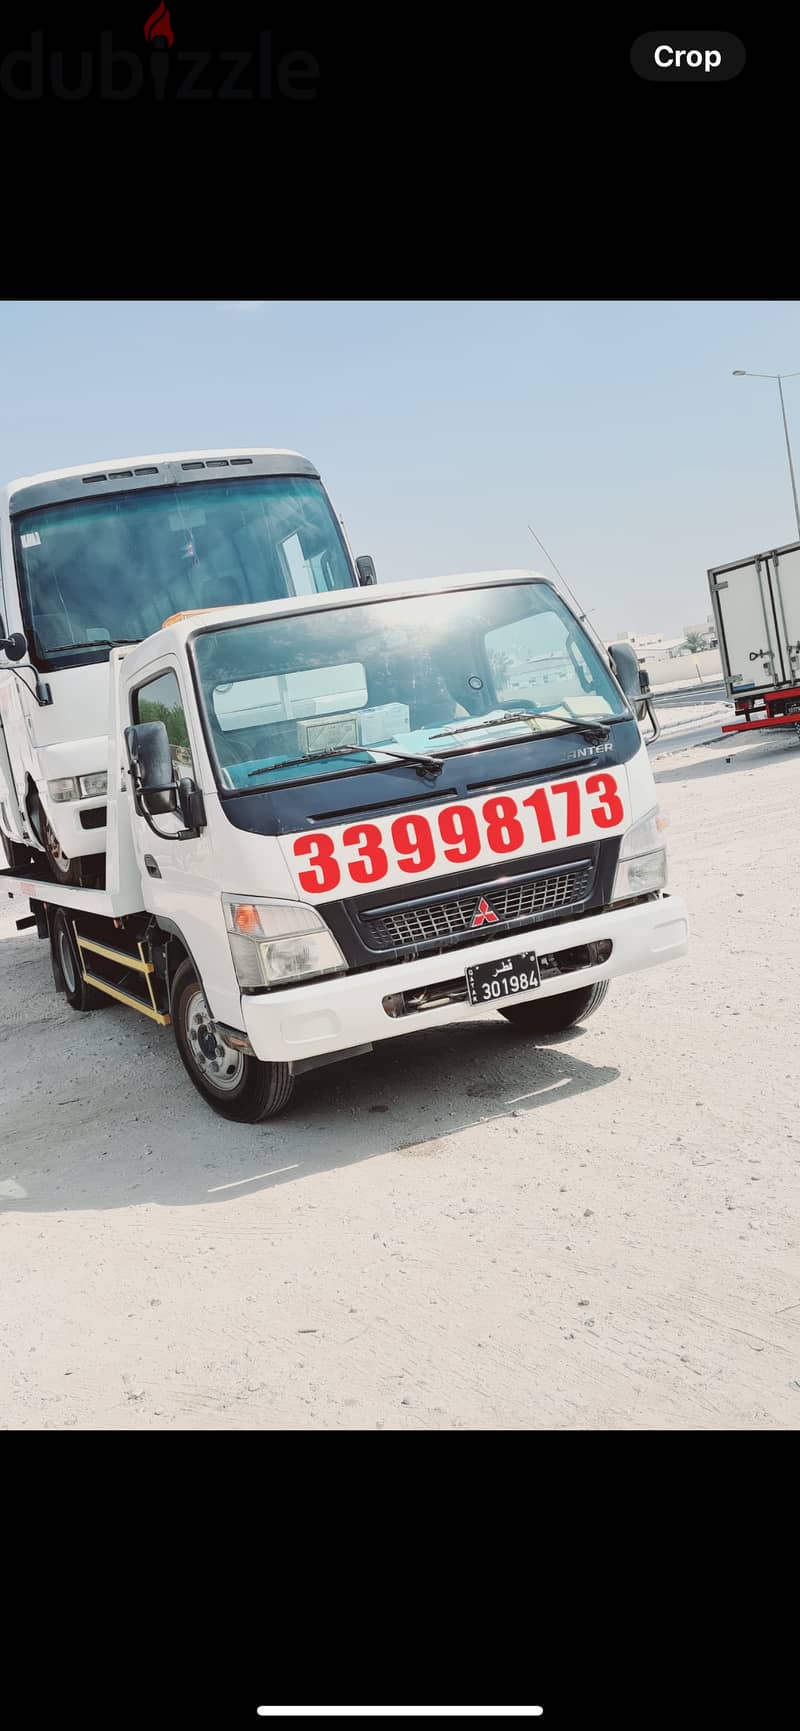 #Breakdown#Recovery#Madinat#Khalifa 33998173#Tow#Truck#madinat#khalifa 0